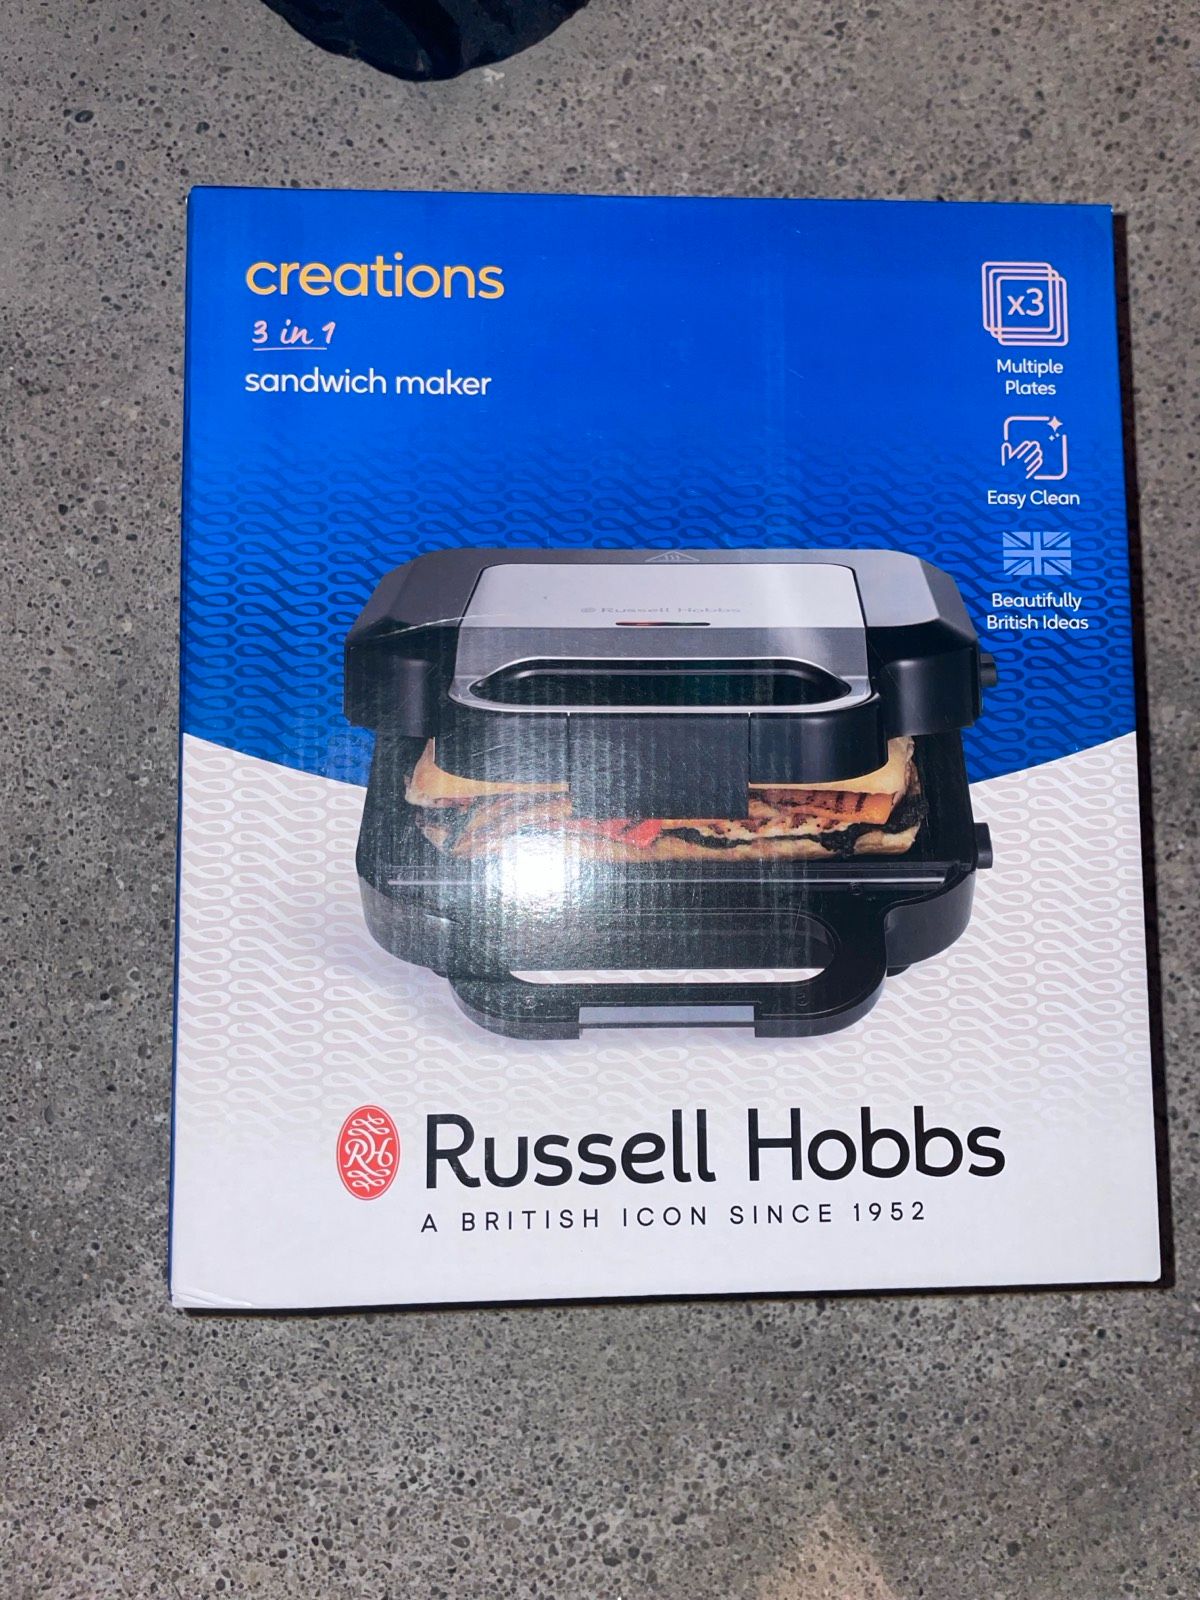 Russell Hobbs Creations 3-in-1 Multifunktionsgerät